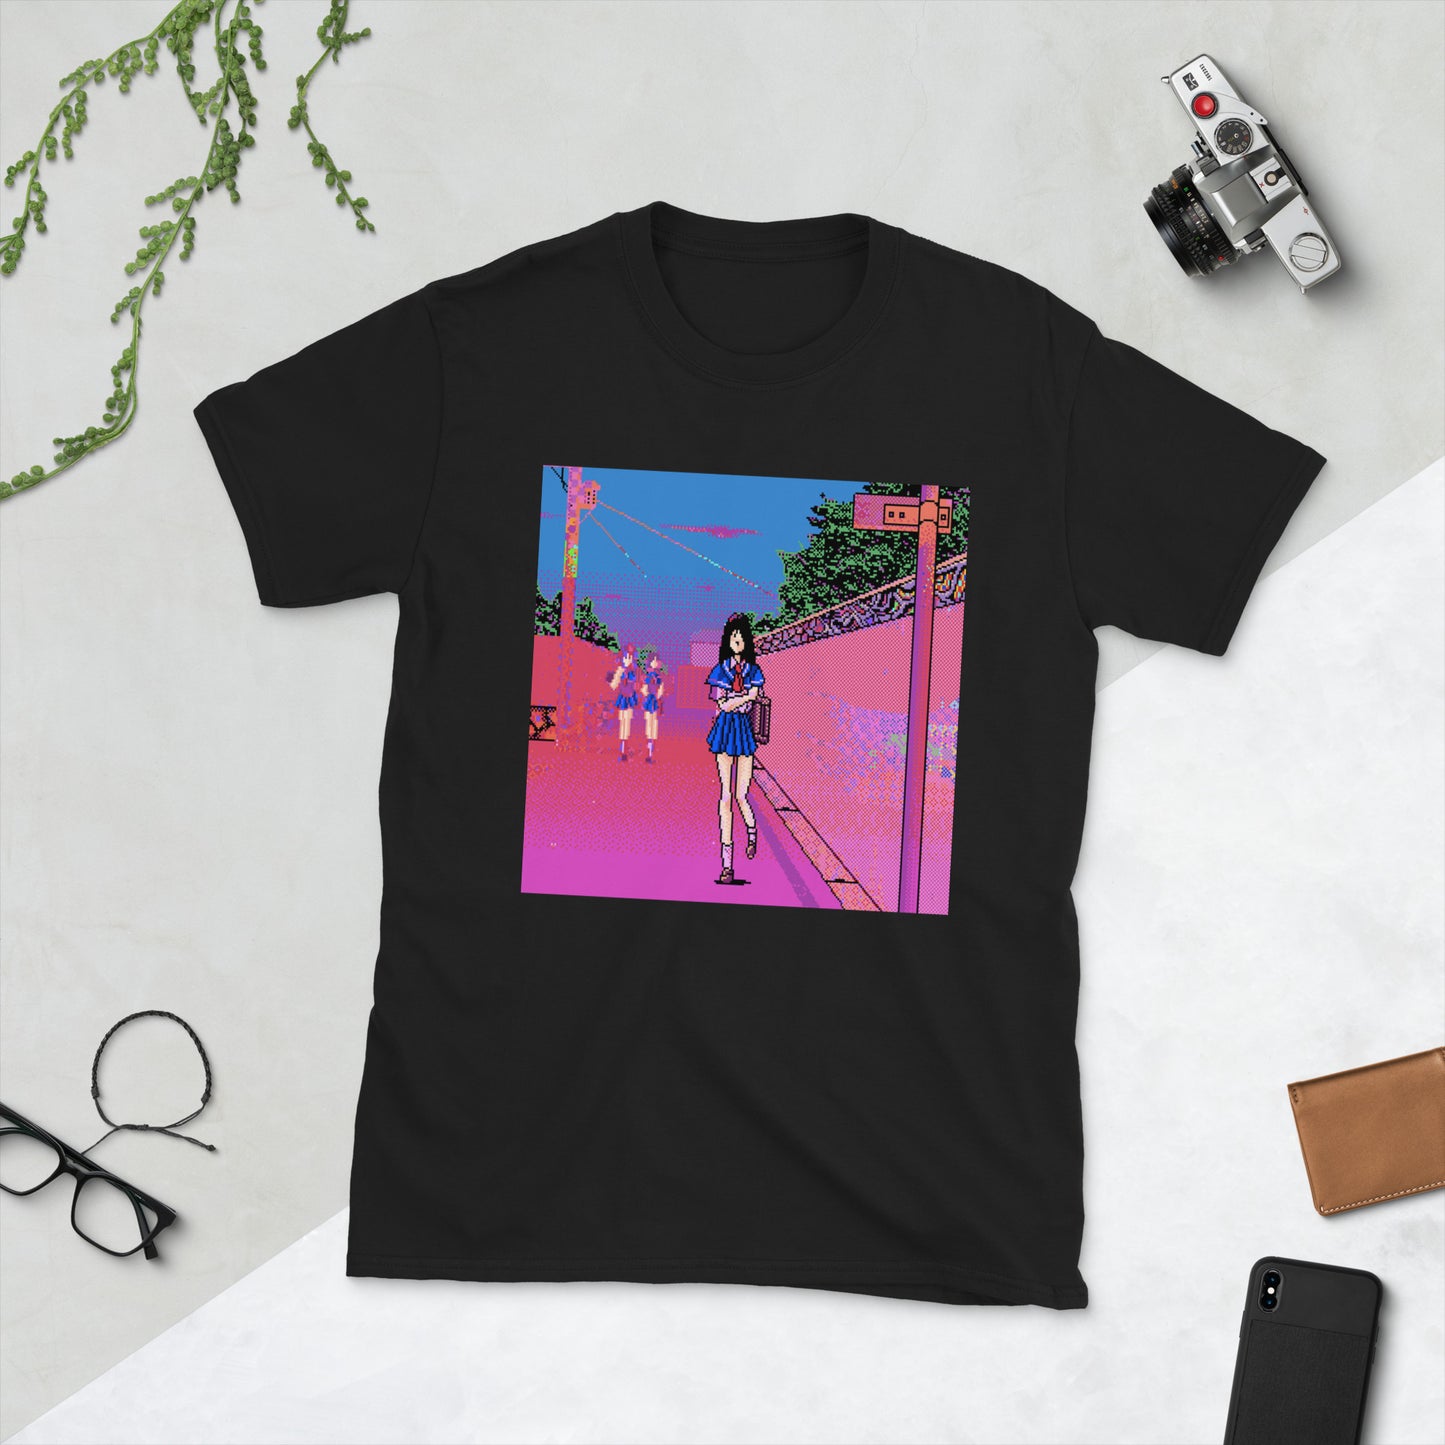 Astroblk - Souvenirs Unisex T-Shirt